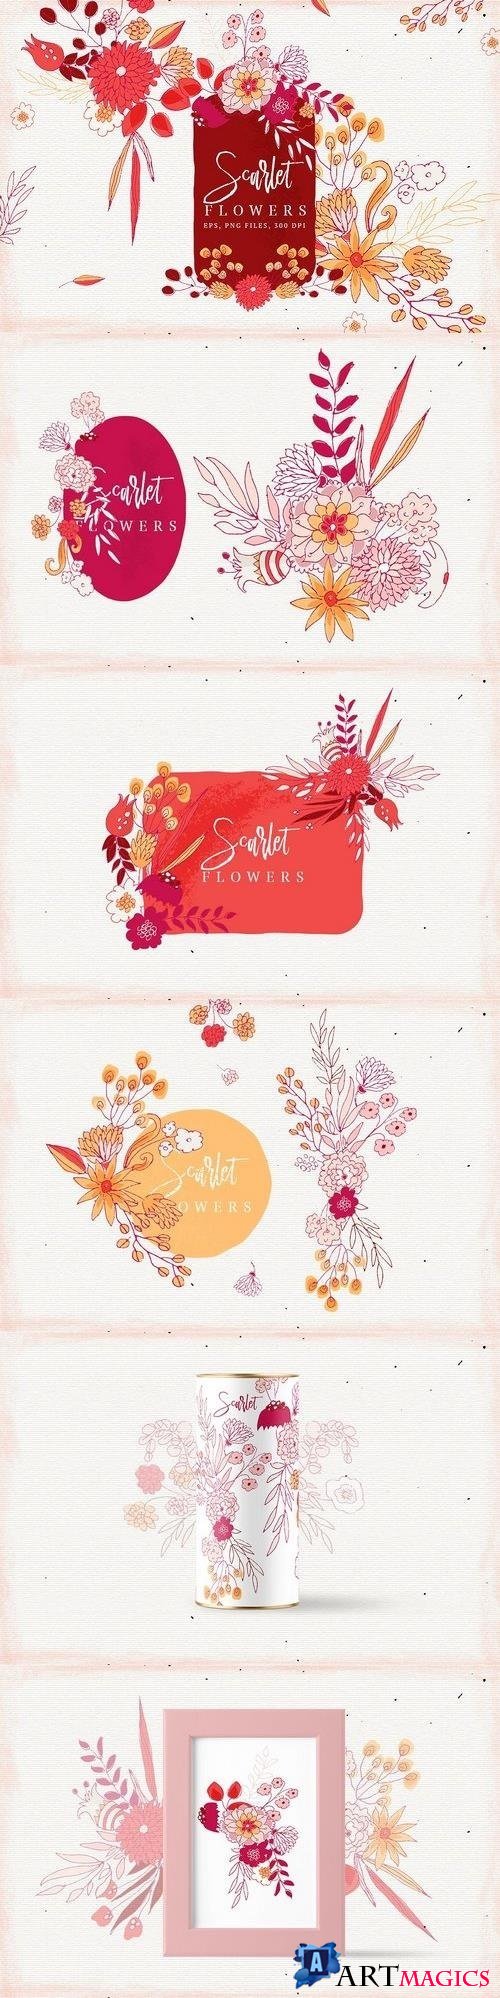 Scarlet Flowers - 1632471